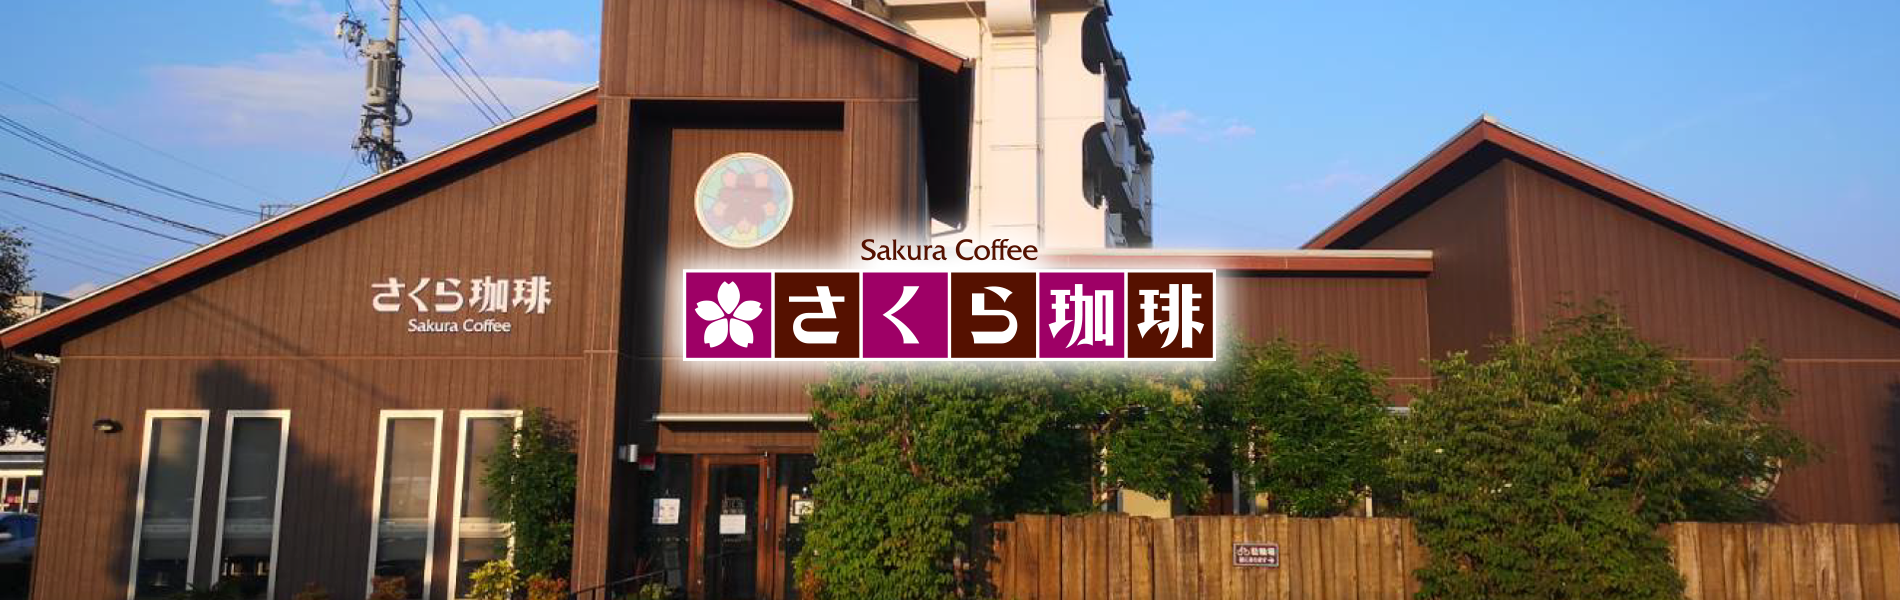 さくら珈琲、岐阜市岩地店、自慢のコーヒーと美味しい食事のカフェ